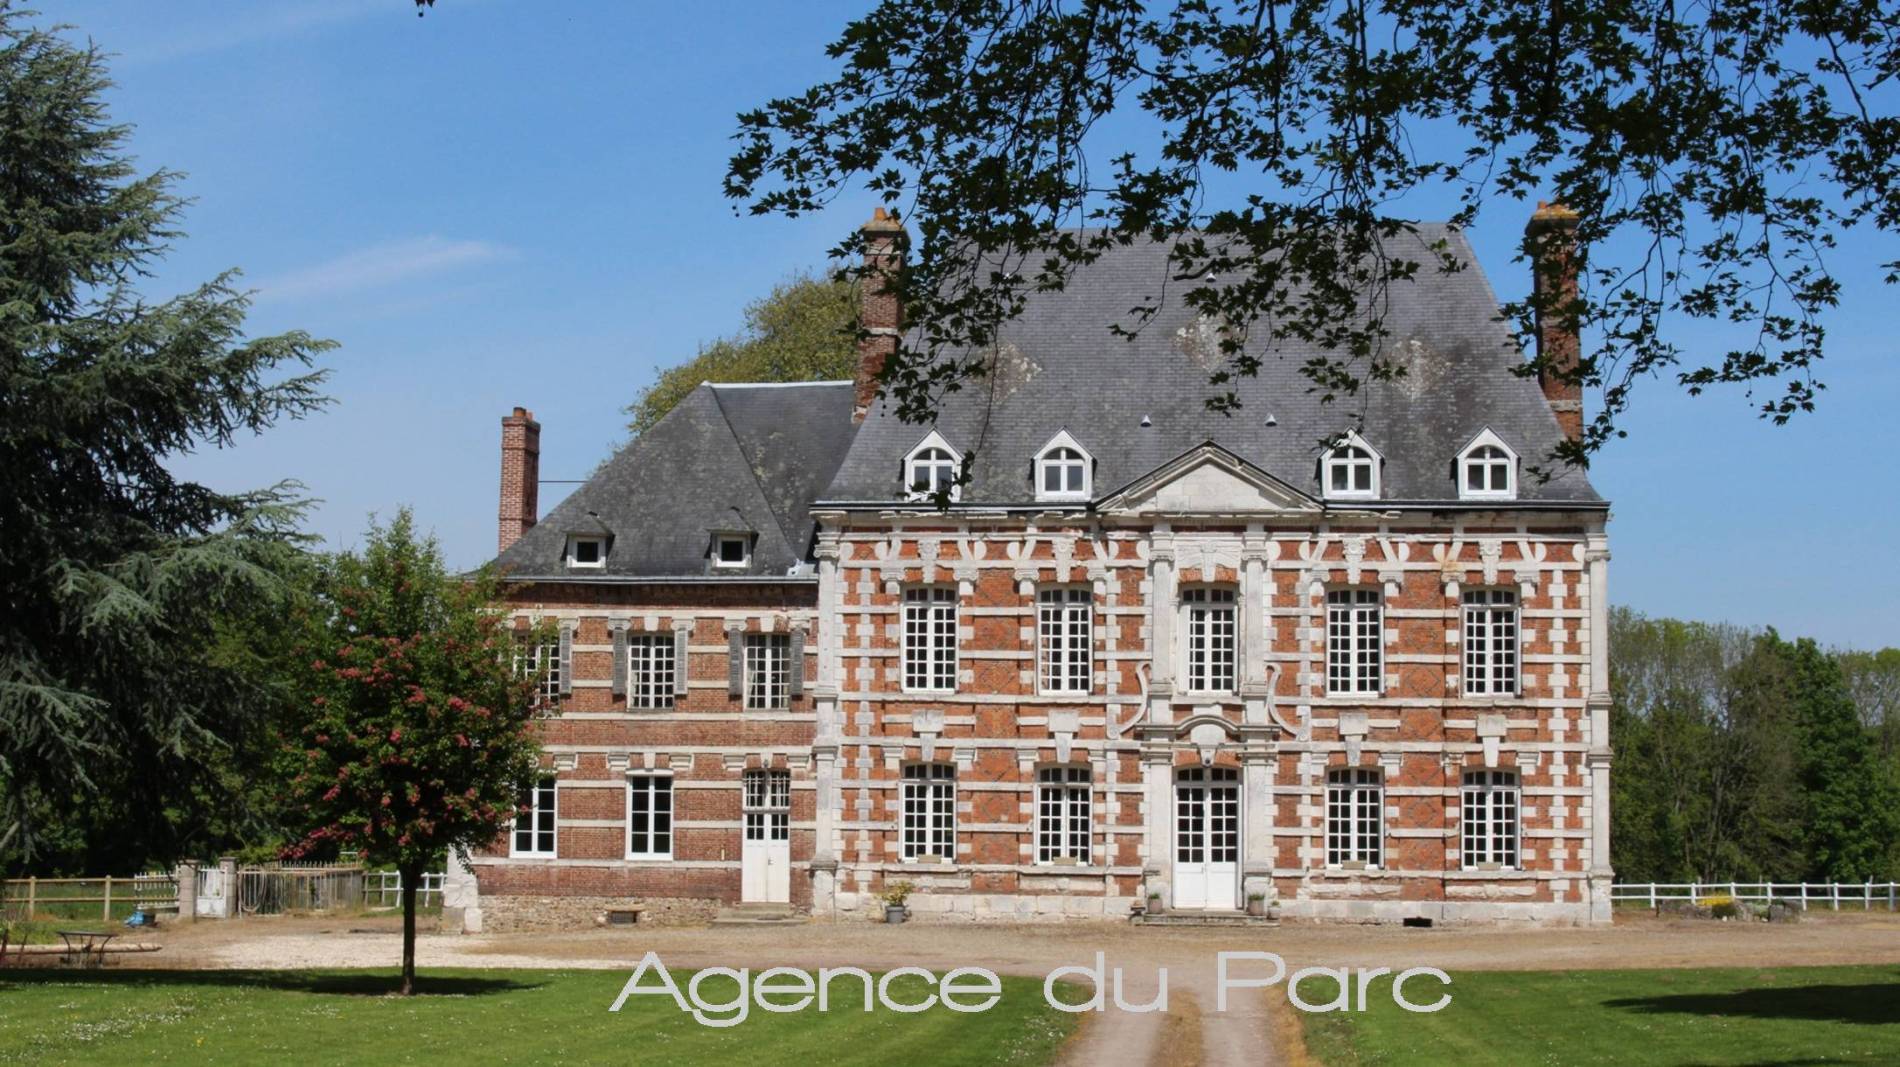 En Normandie, vente d'un magnifique château XVIIème, sur un parc de 3 ha, entre Caudebec en Caux et Le Havre